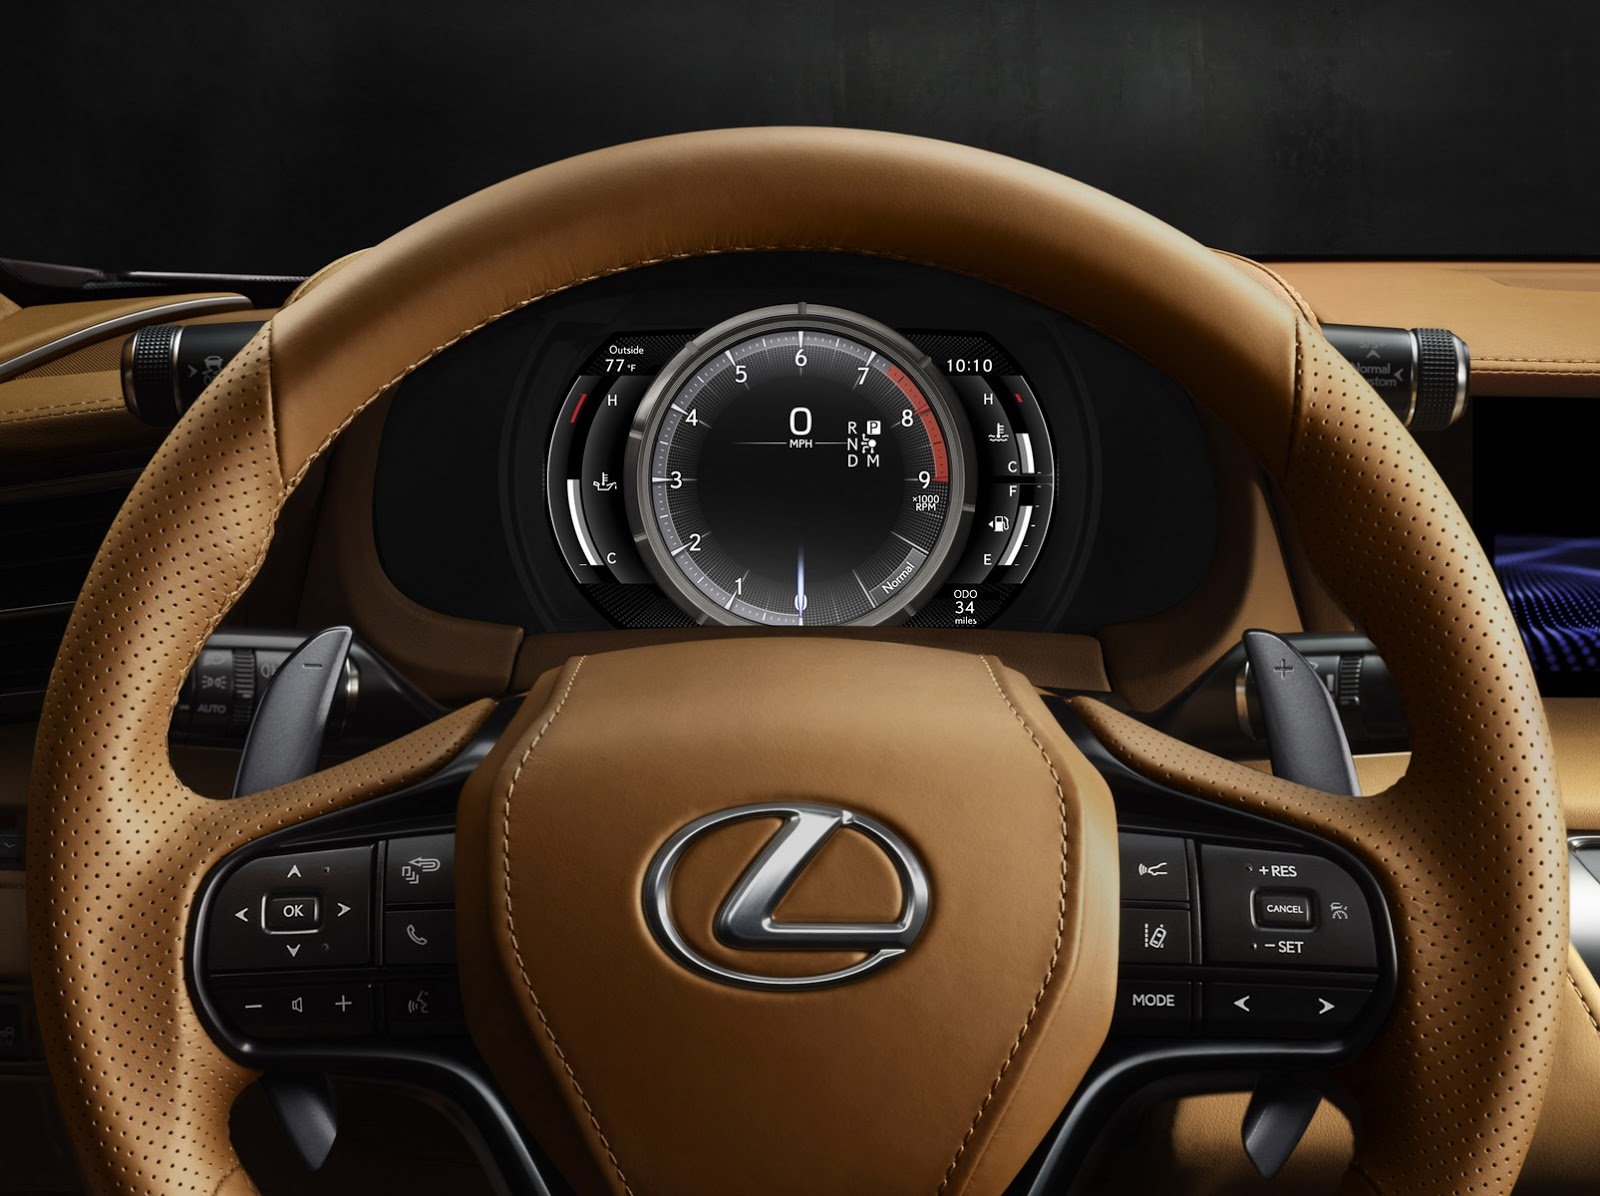 Čtyřmístné kupé Lexus LC 500 se chlubí pohonem zadních kol a atmosférickým osmiválcem.